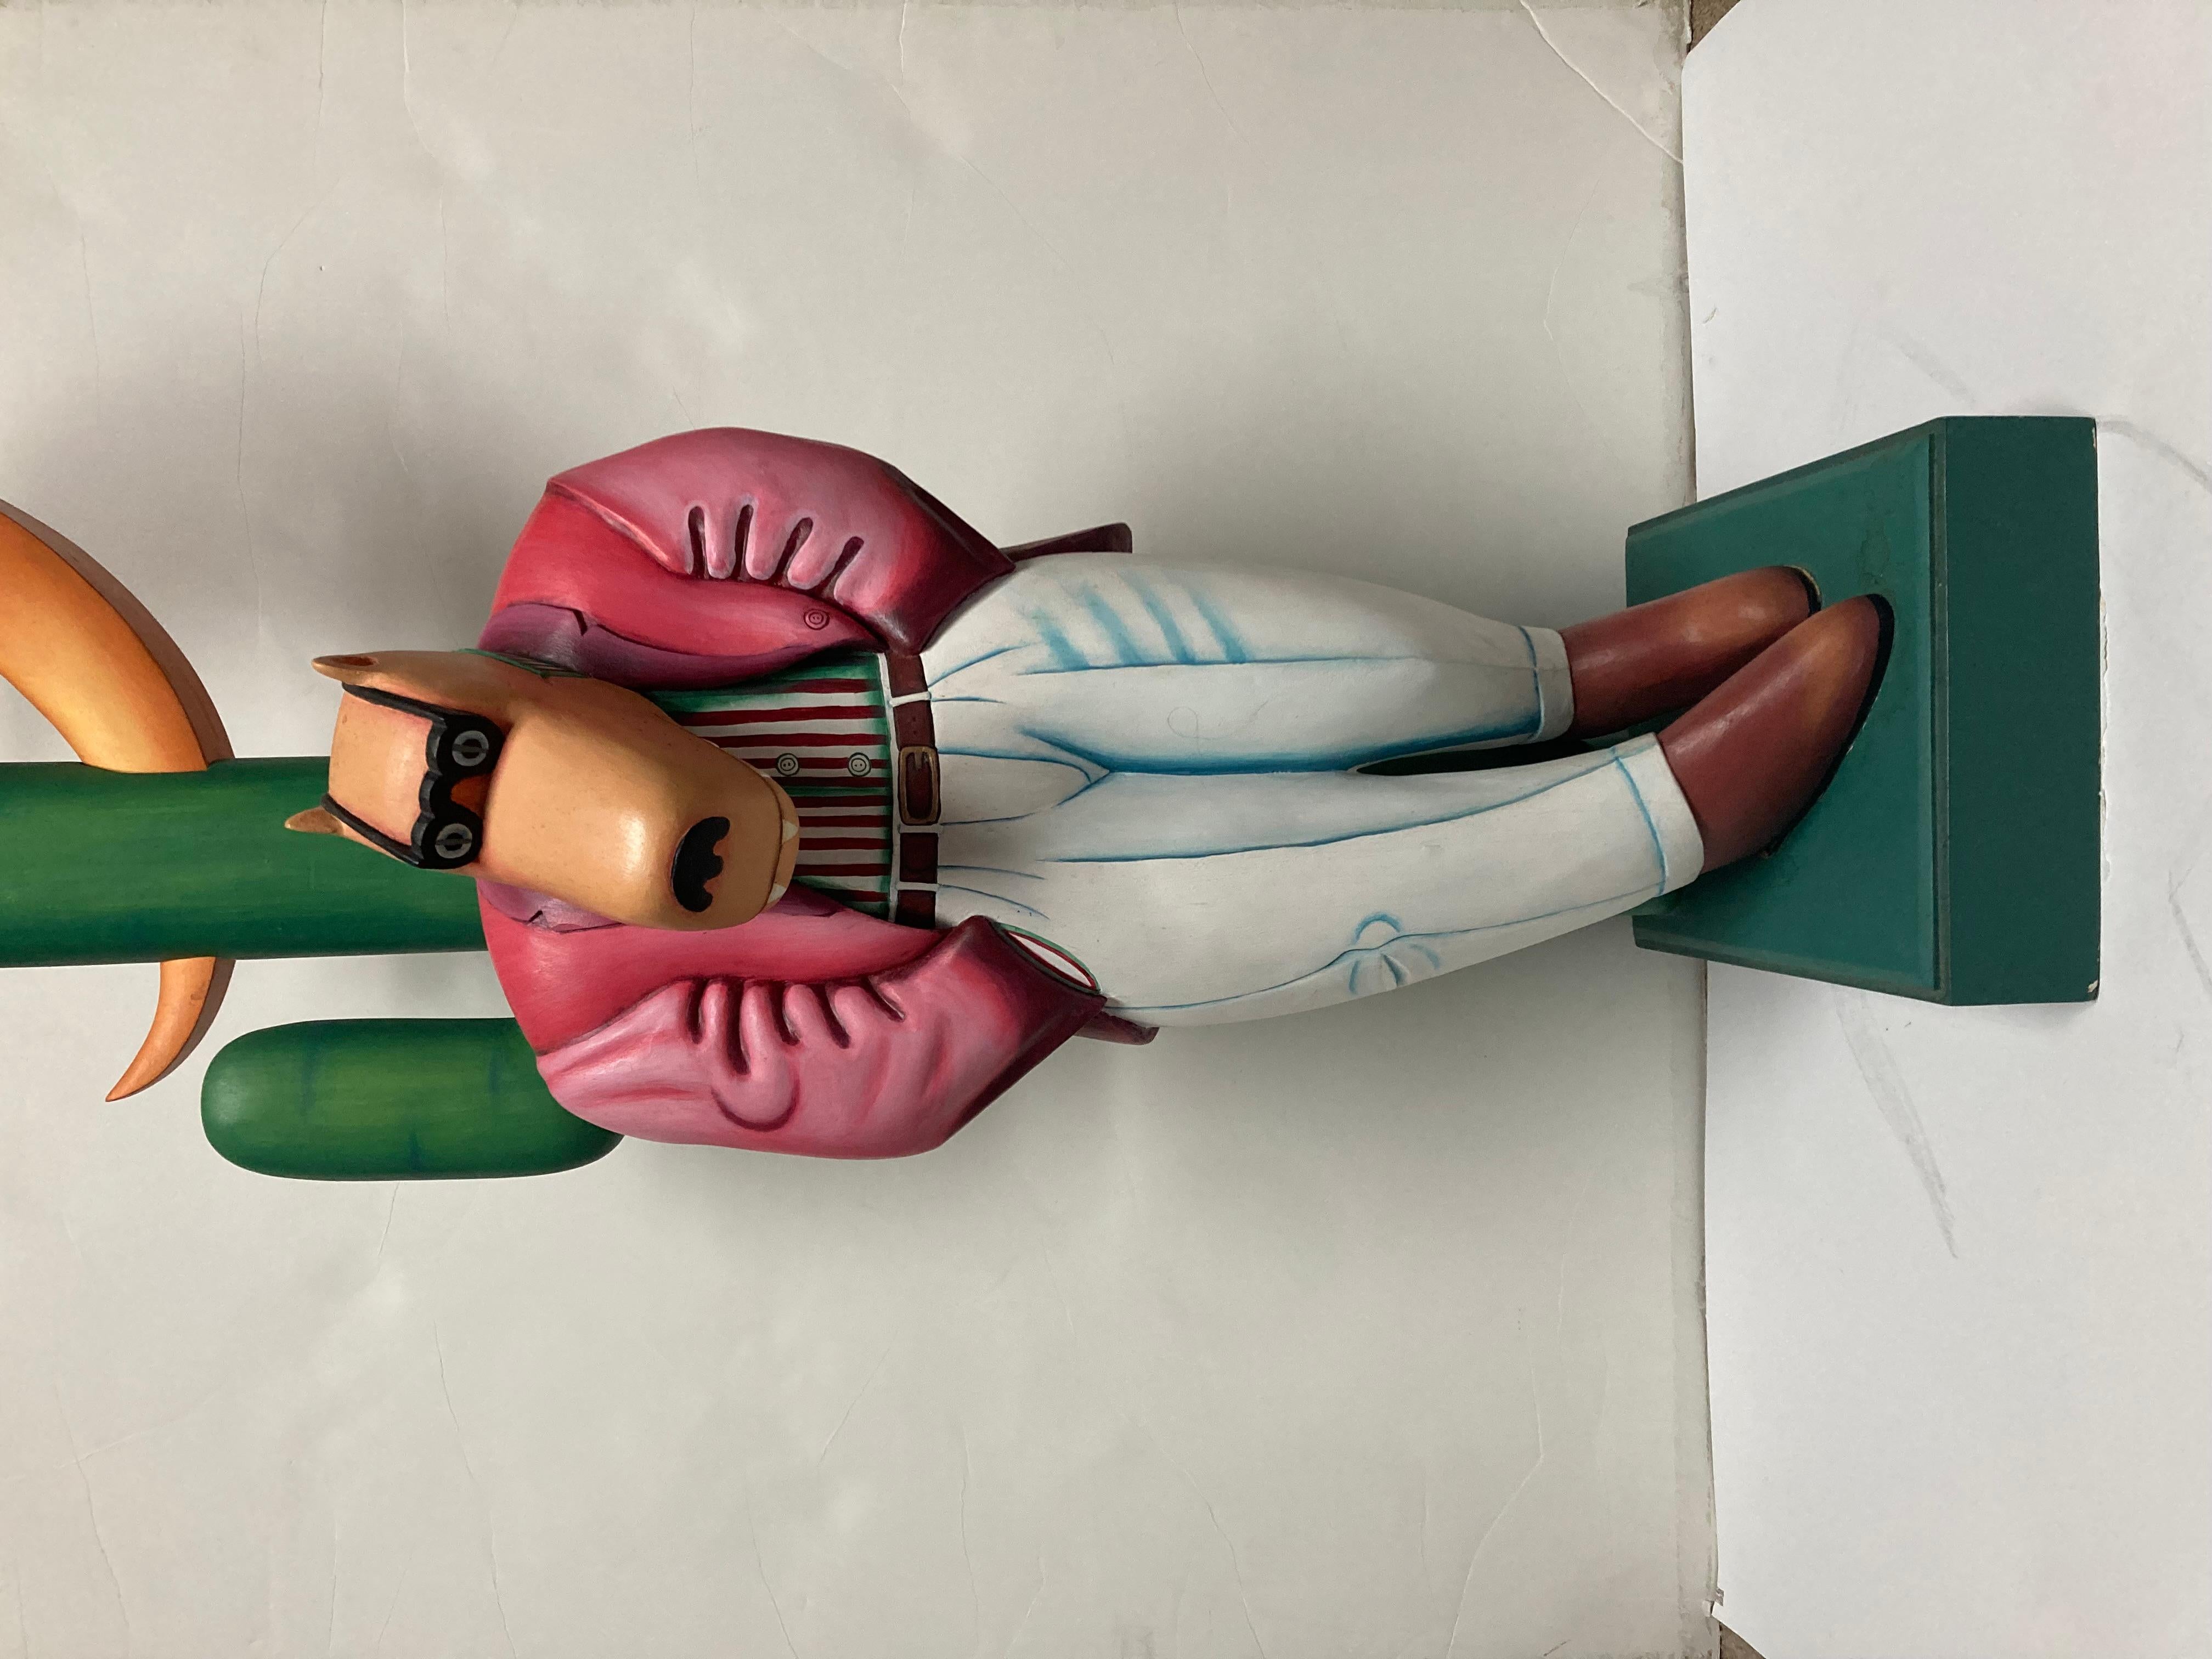 Dies ist ein Markus Pierson Dreaming of Her Sculpture Wood Sculpturer 1987 48 Zoll hoch 50 gemacht. Maße 48x12. In gutem Zustand